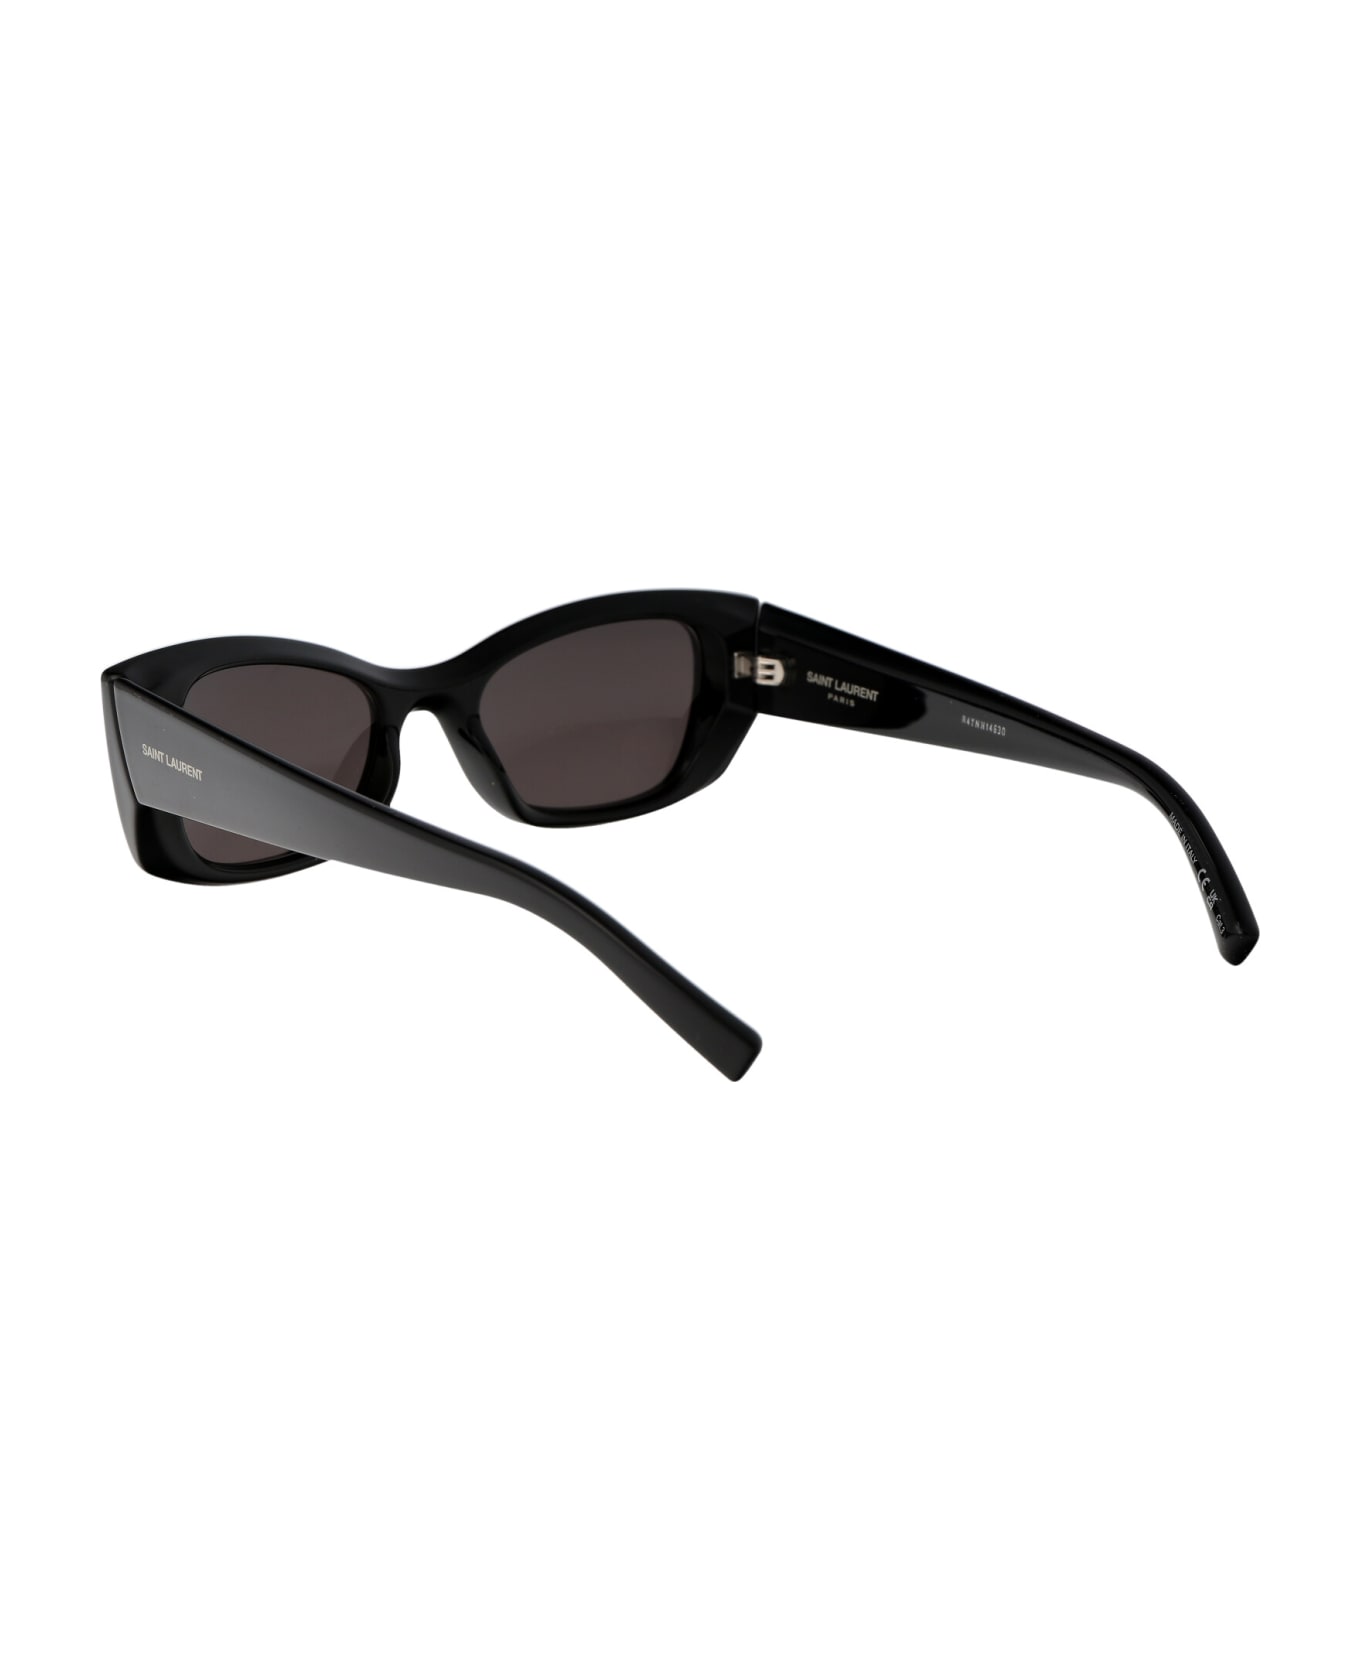 Saint Laurent Eyewear Sl 593 Sunglasses - 001 BLACK BLACK BLACK